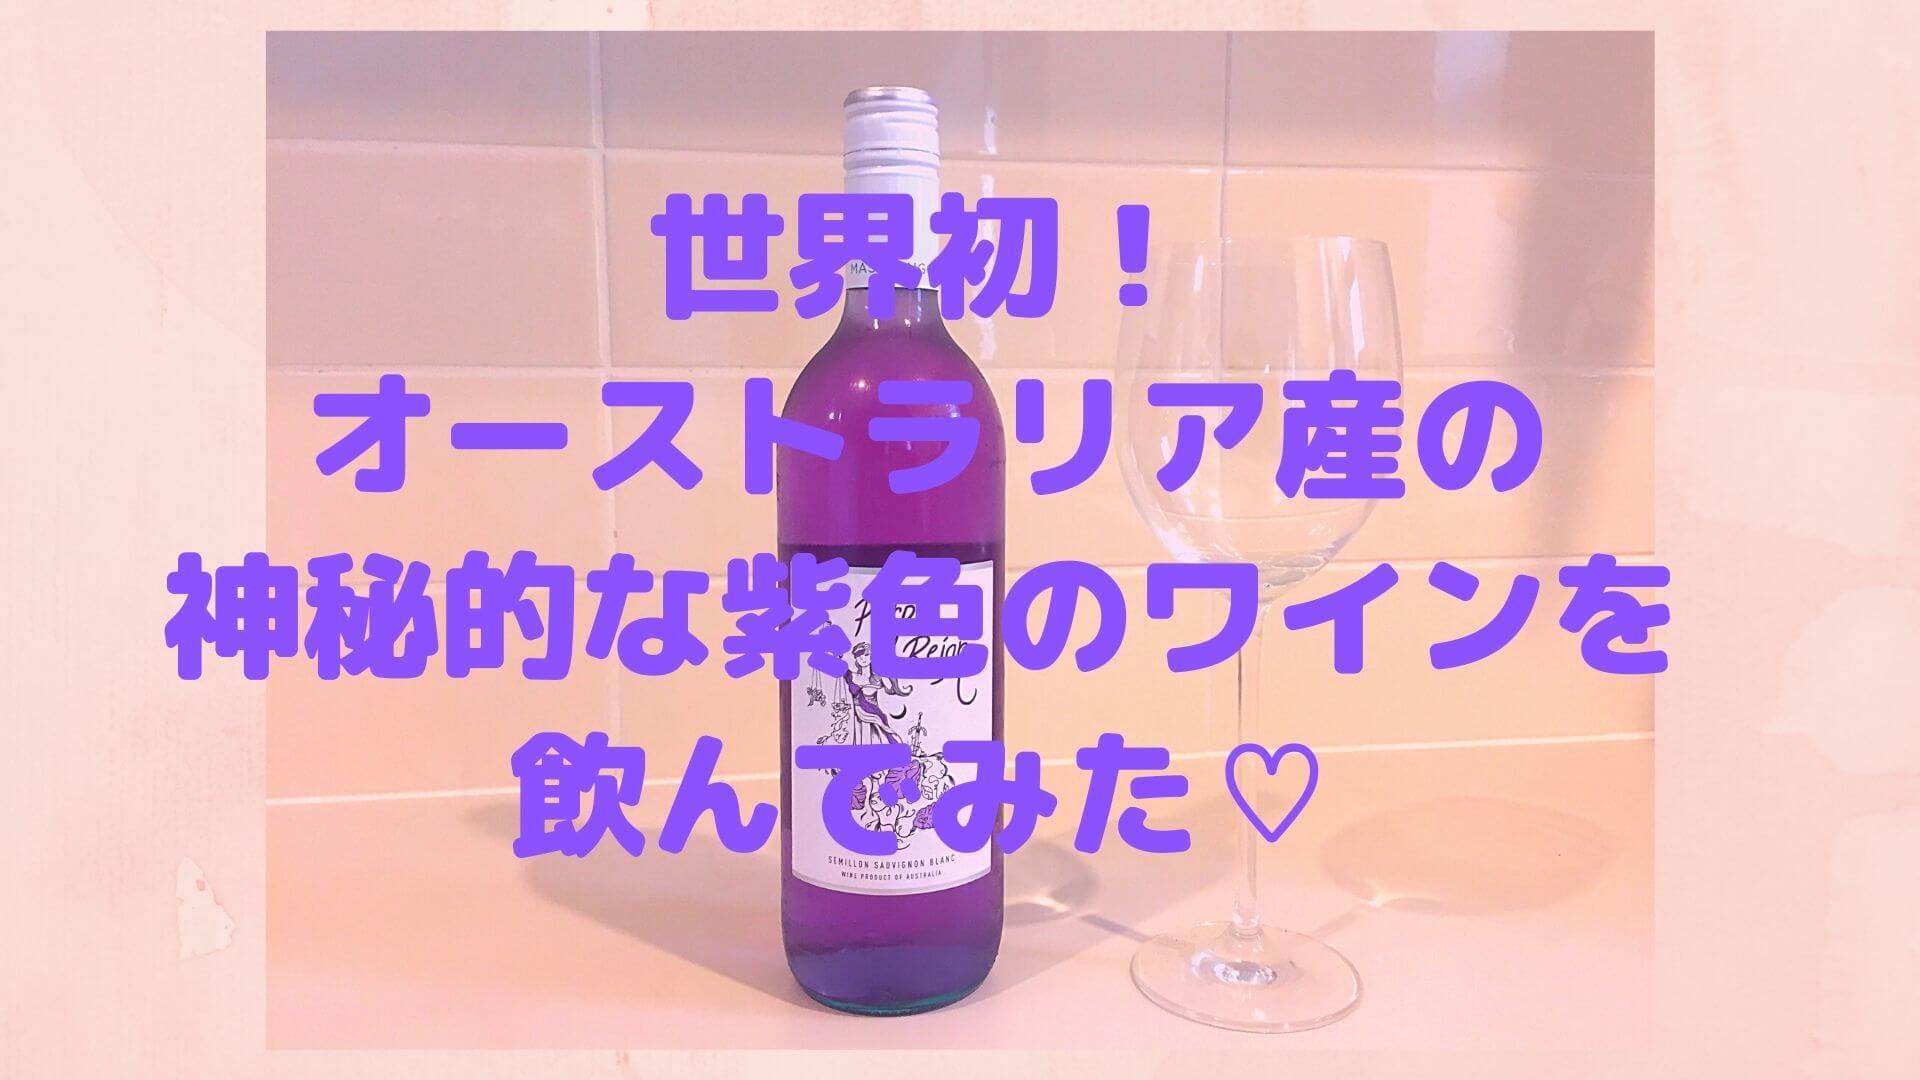 オーストラリア産の紫色の白ワイン